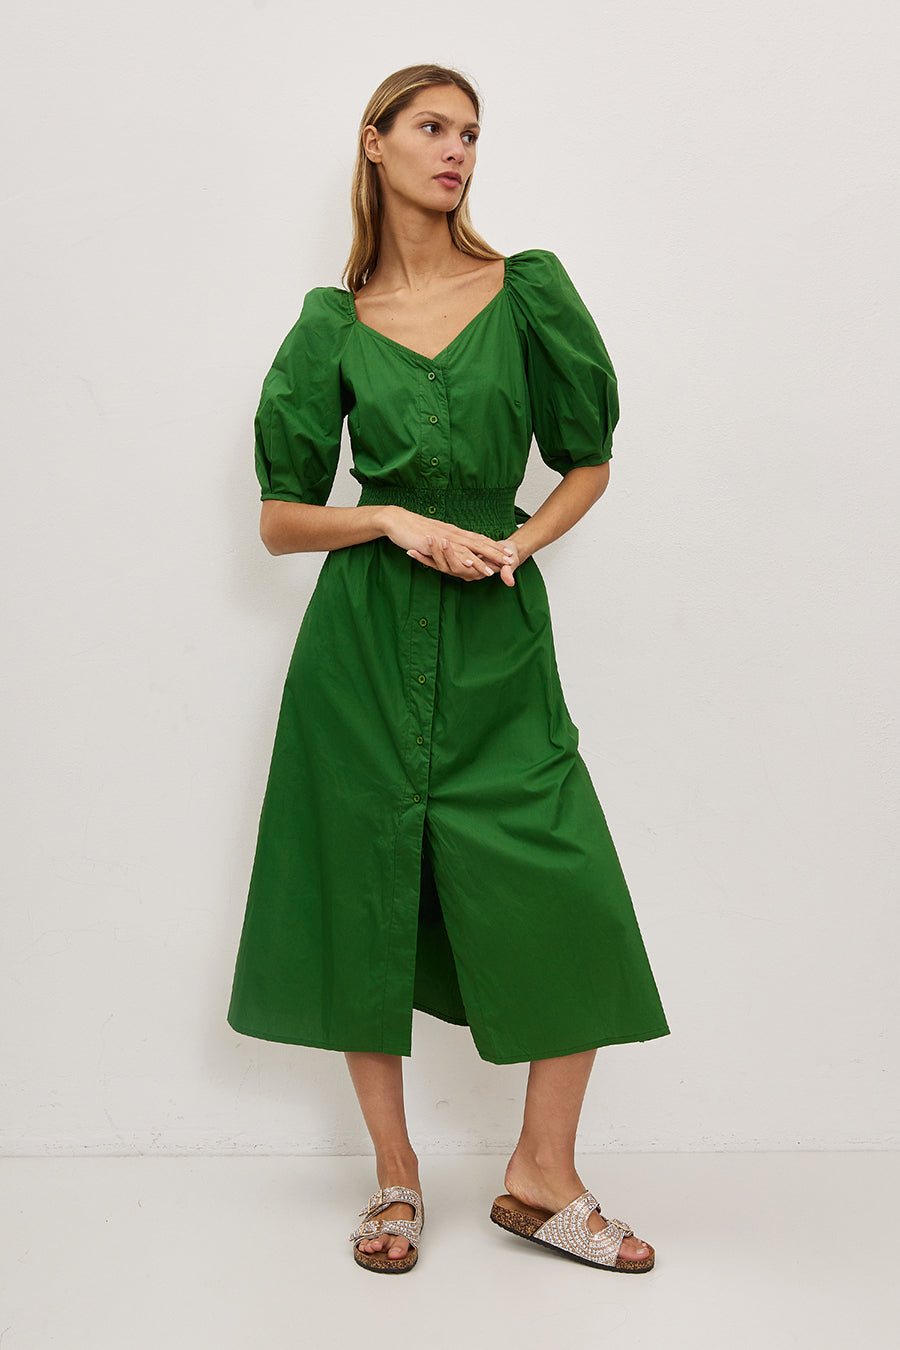 Γυναικείο φόρεμα Eveline, Πράσινο 1